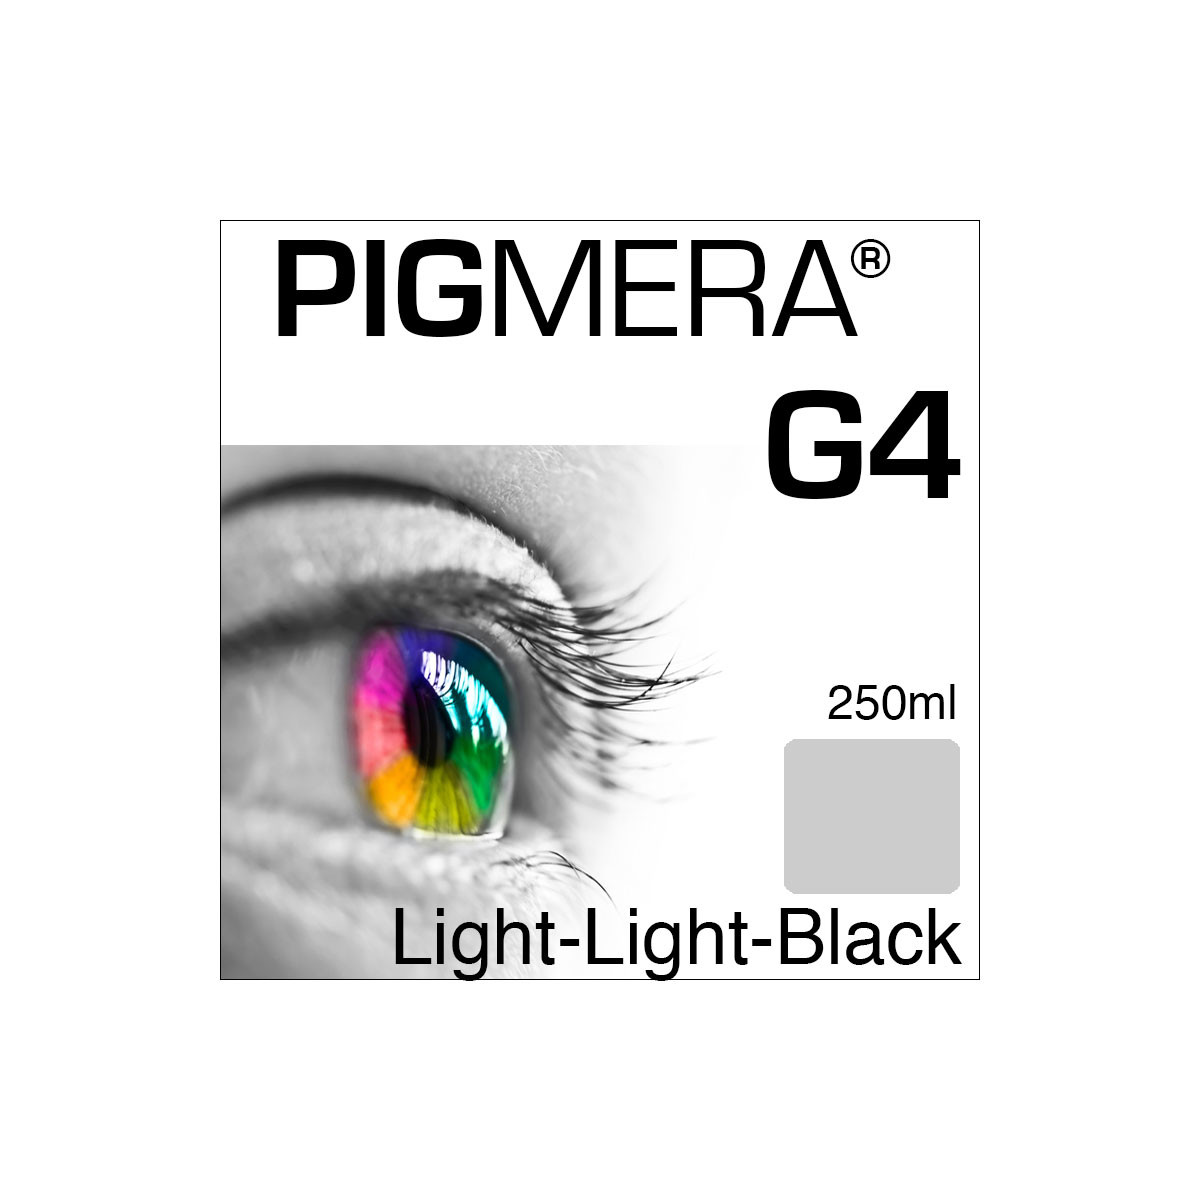 farbenwerk Pigmera G4 Bottle Light-Light-Black 250ml